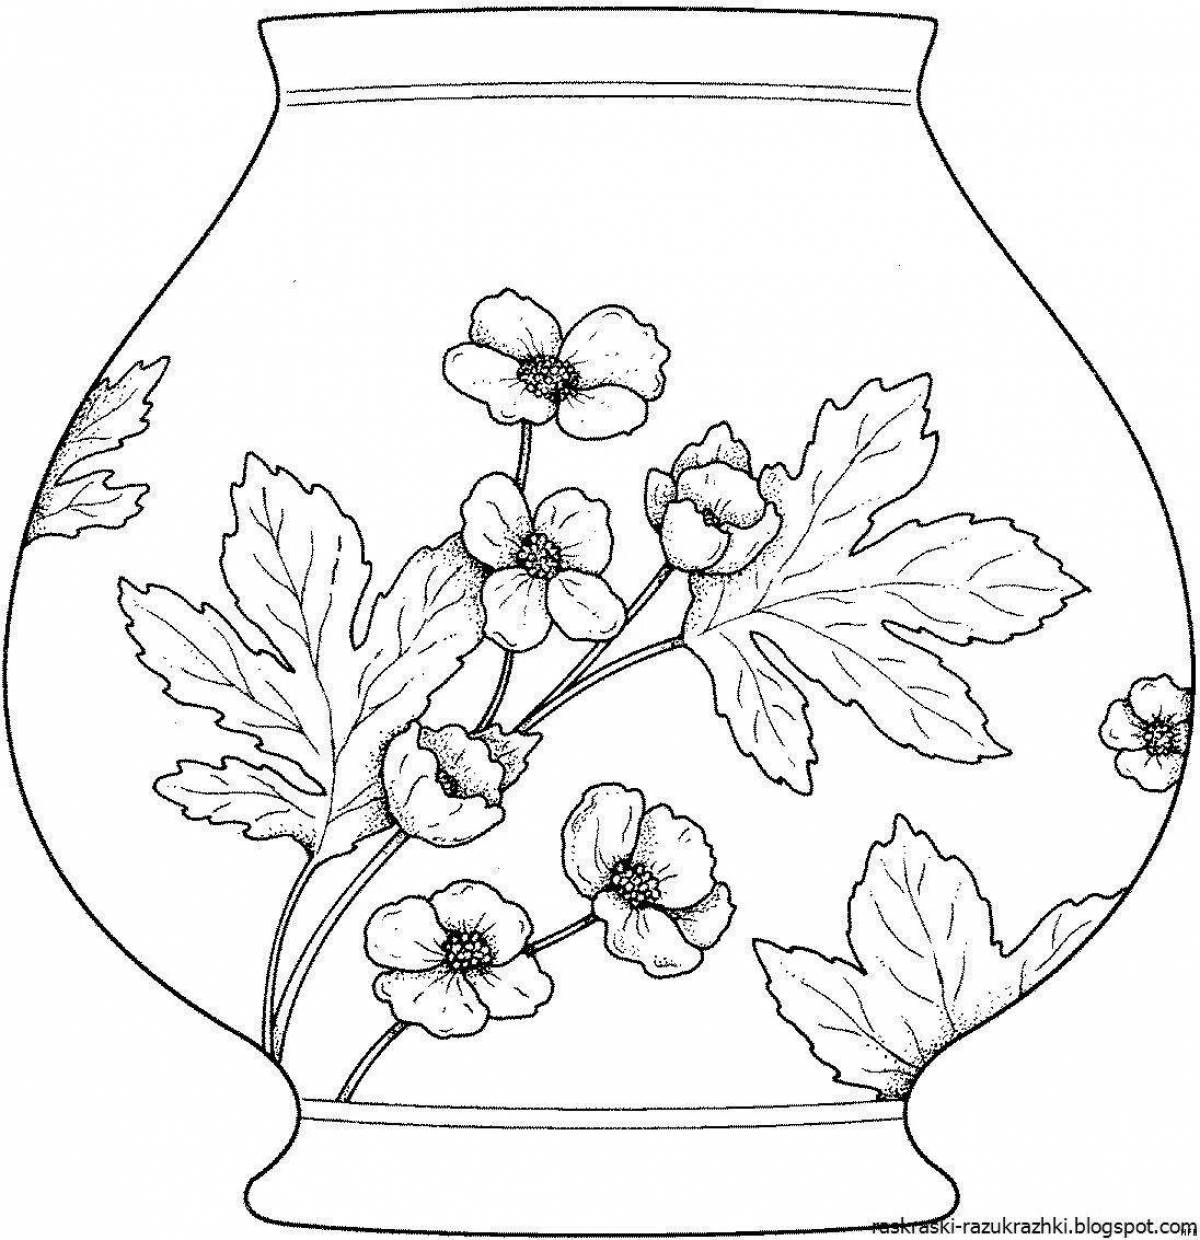 Привлекательная раскраска с рисунком вазы